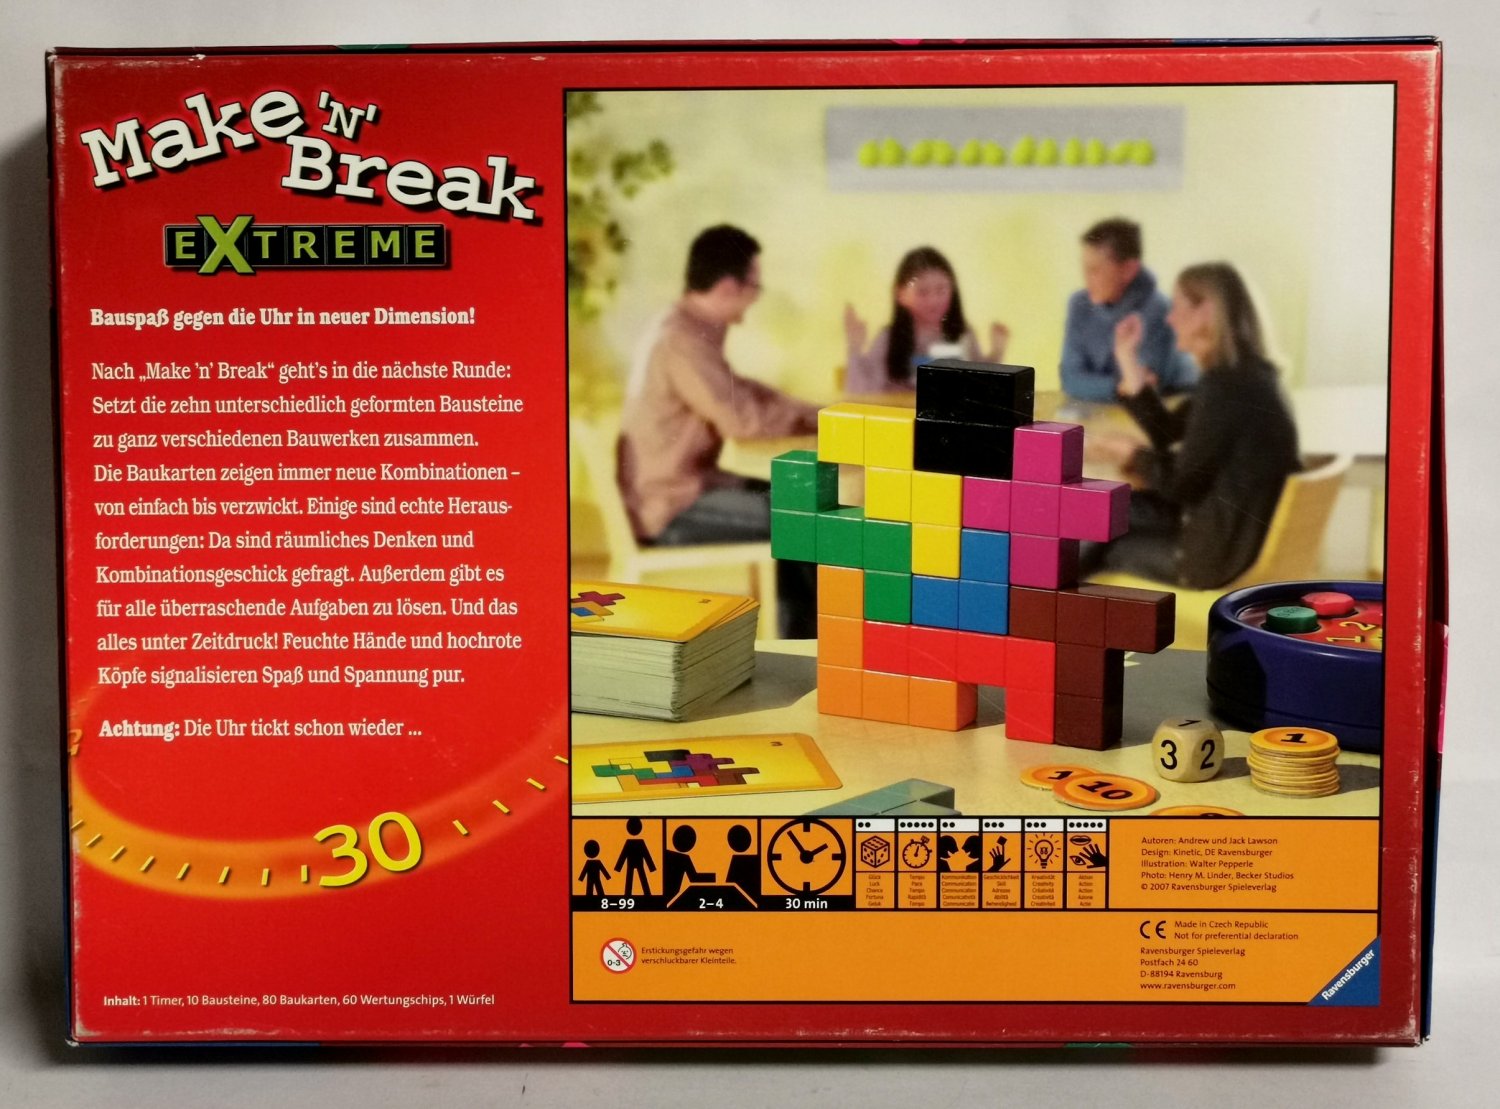 Ravensburger 26432 - Make 'n' Break Extreme “ (Andrew & Jack Lawson) –  Spiel gebraucht kaufen – A02nlGEX41ZZE